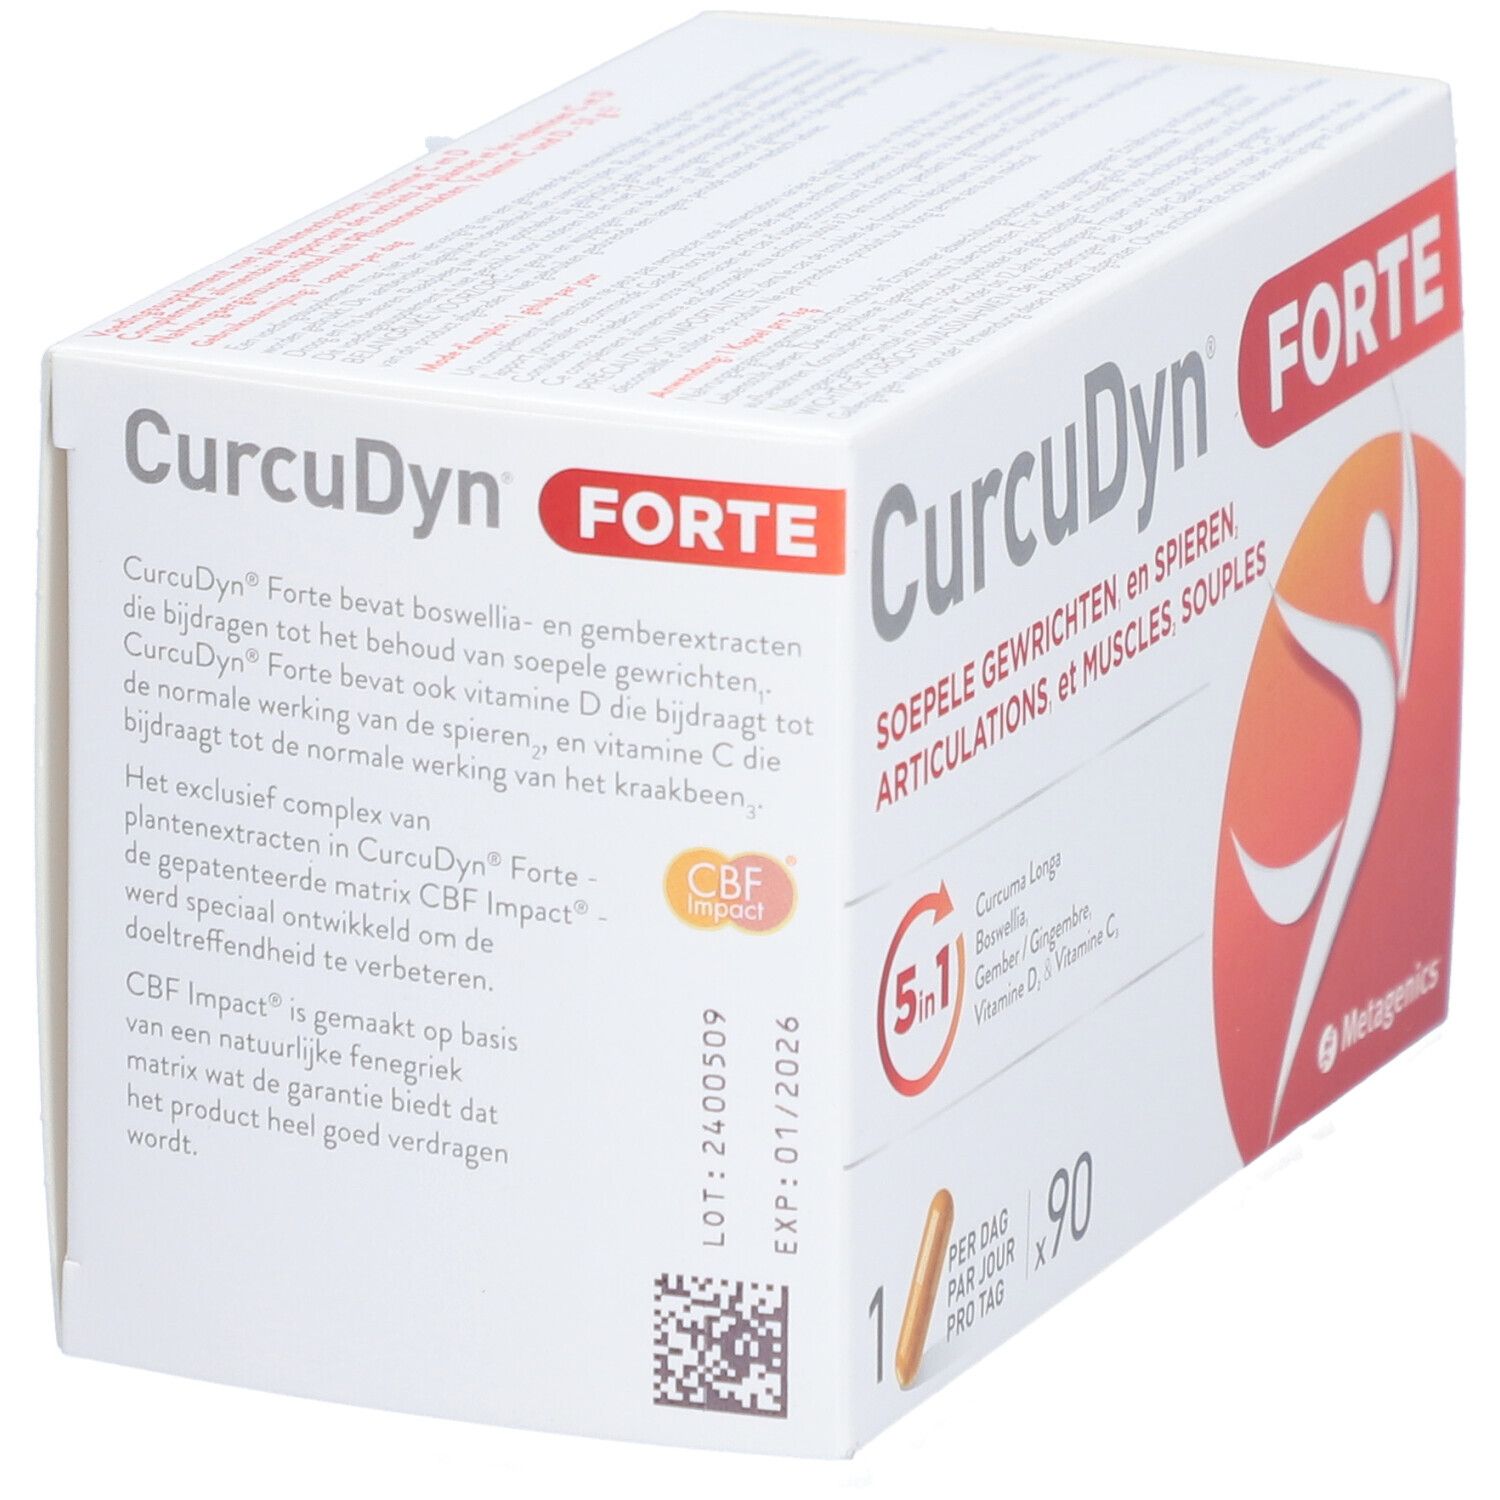 Metagenics® CurcuDyn® Forte